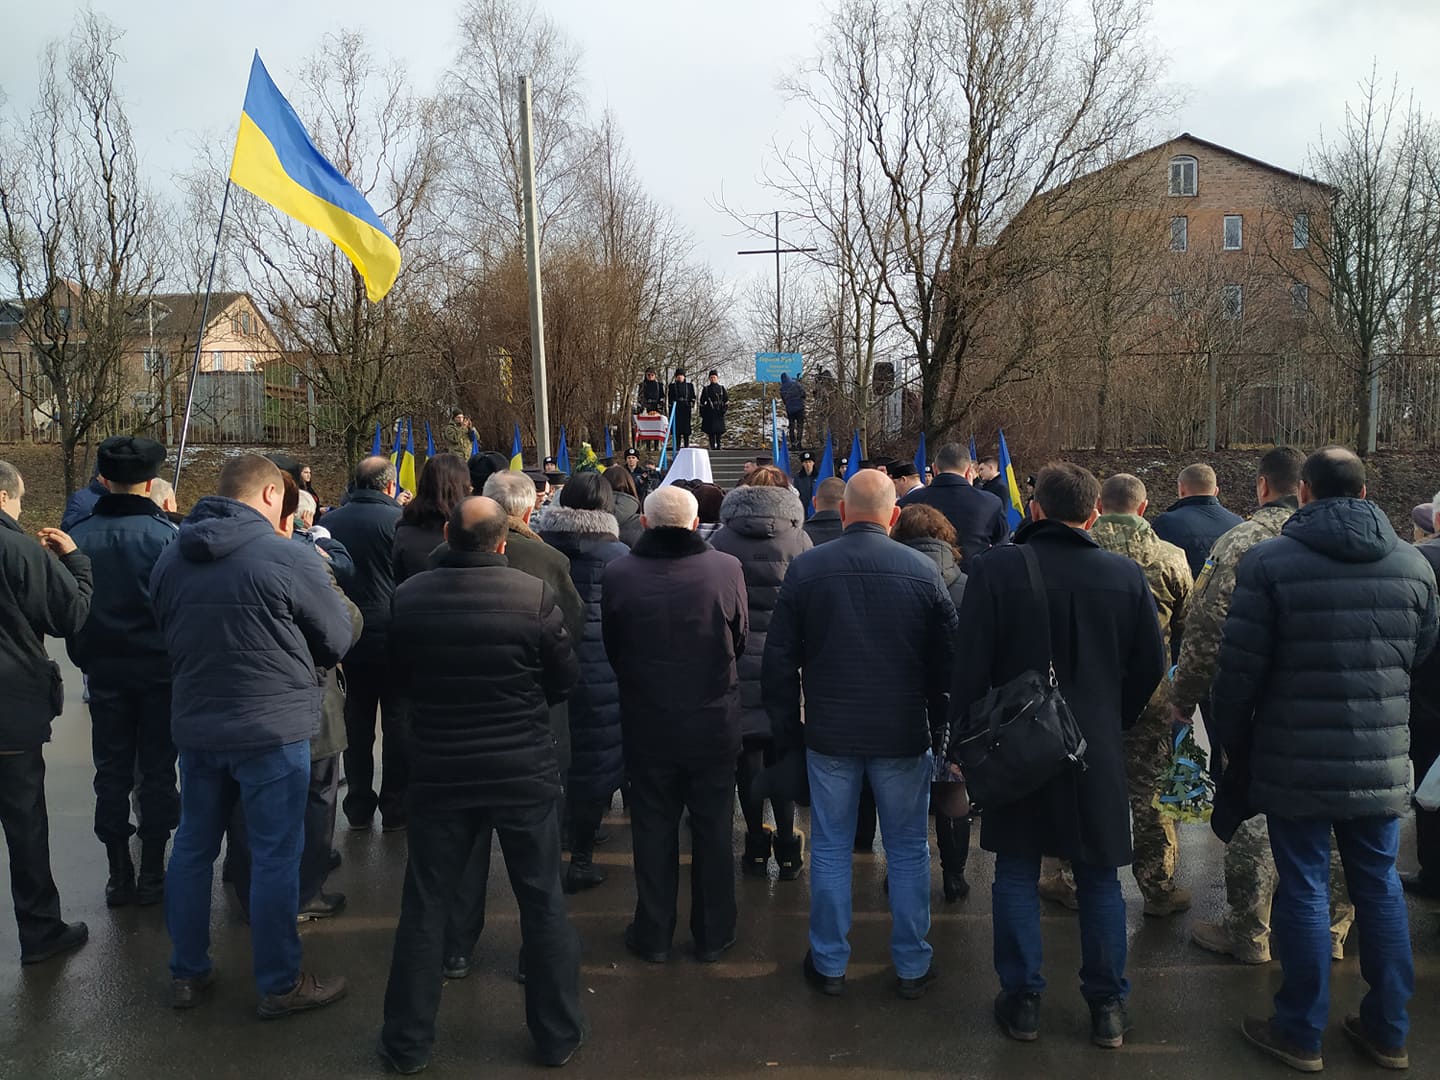 «То був великий прояв волевиявлення українського народу»: у Луцьку згадали полеглих у боях під Крутами